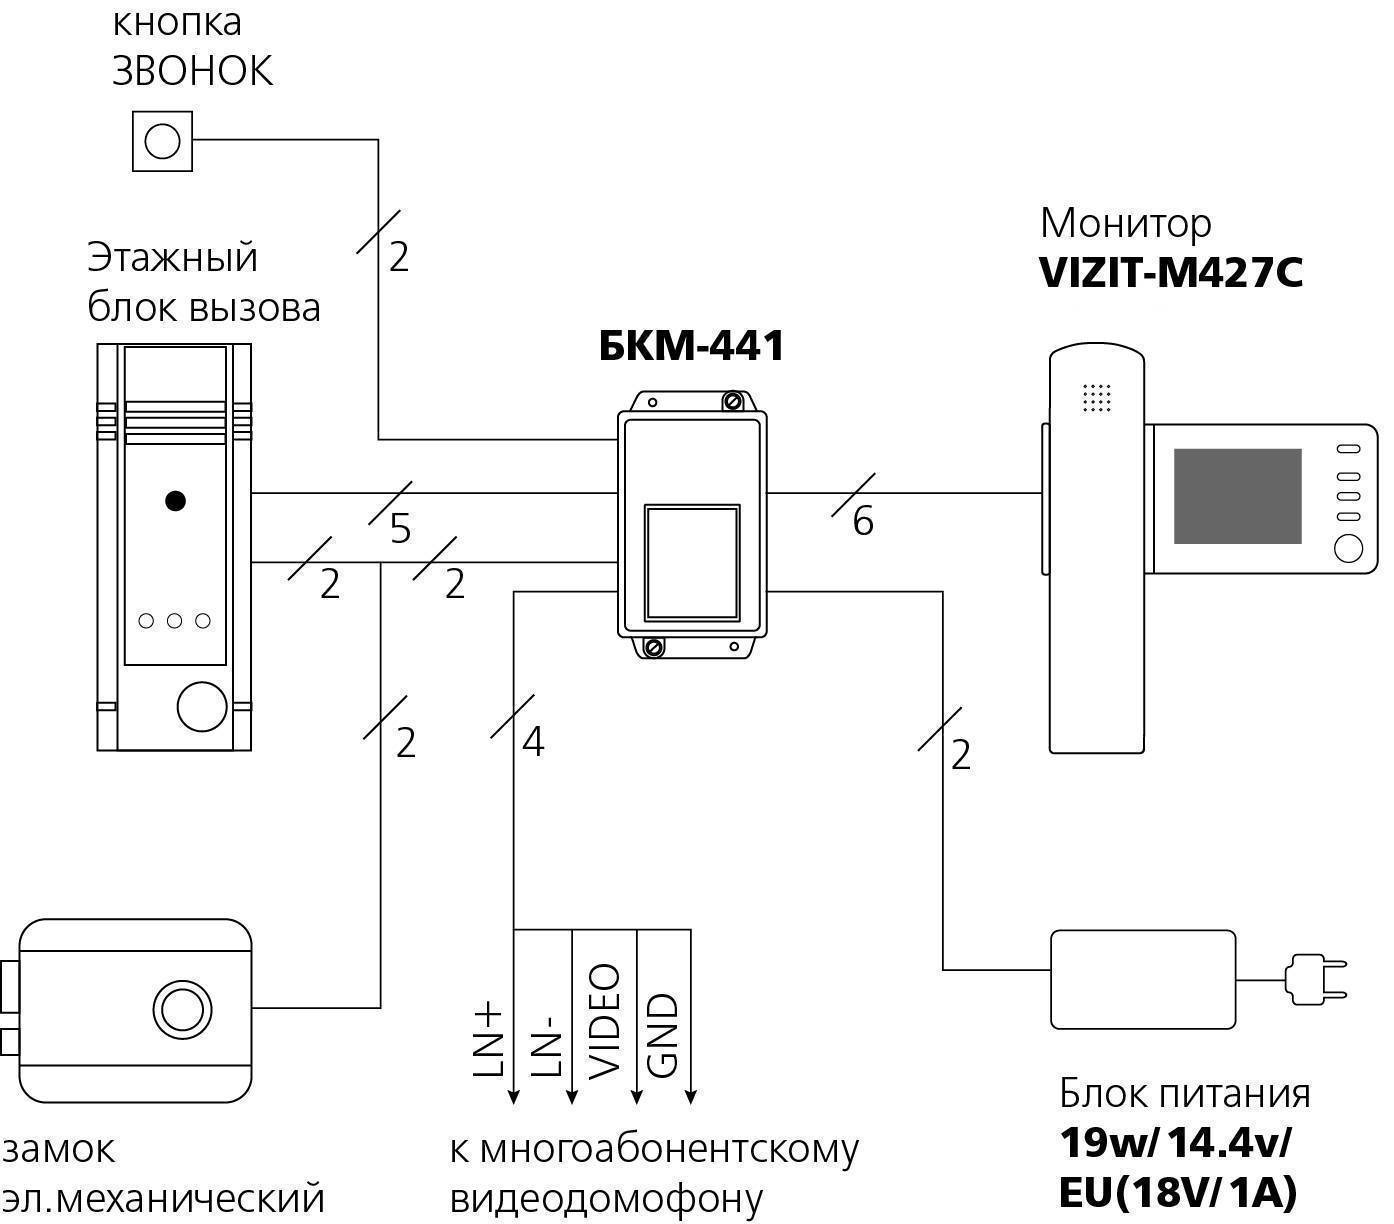 Монитор видеодомофона VIZIT-M427C